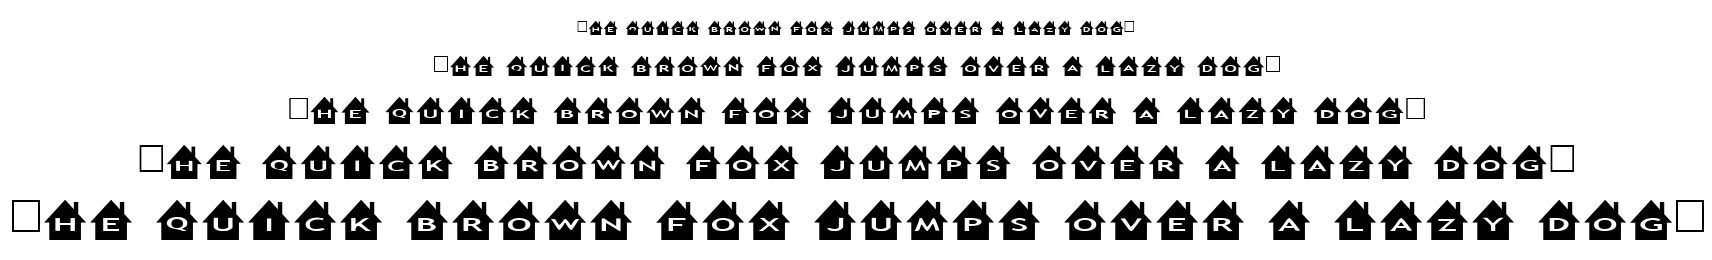 alphashapes houses font